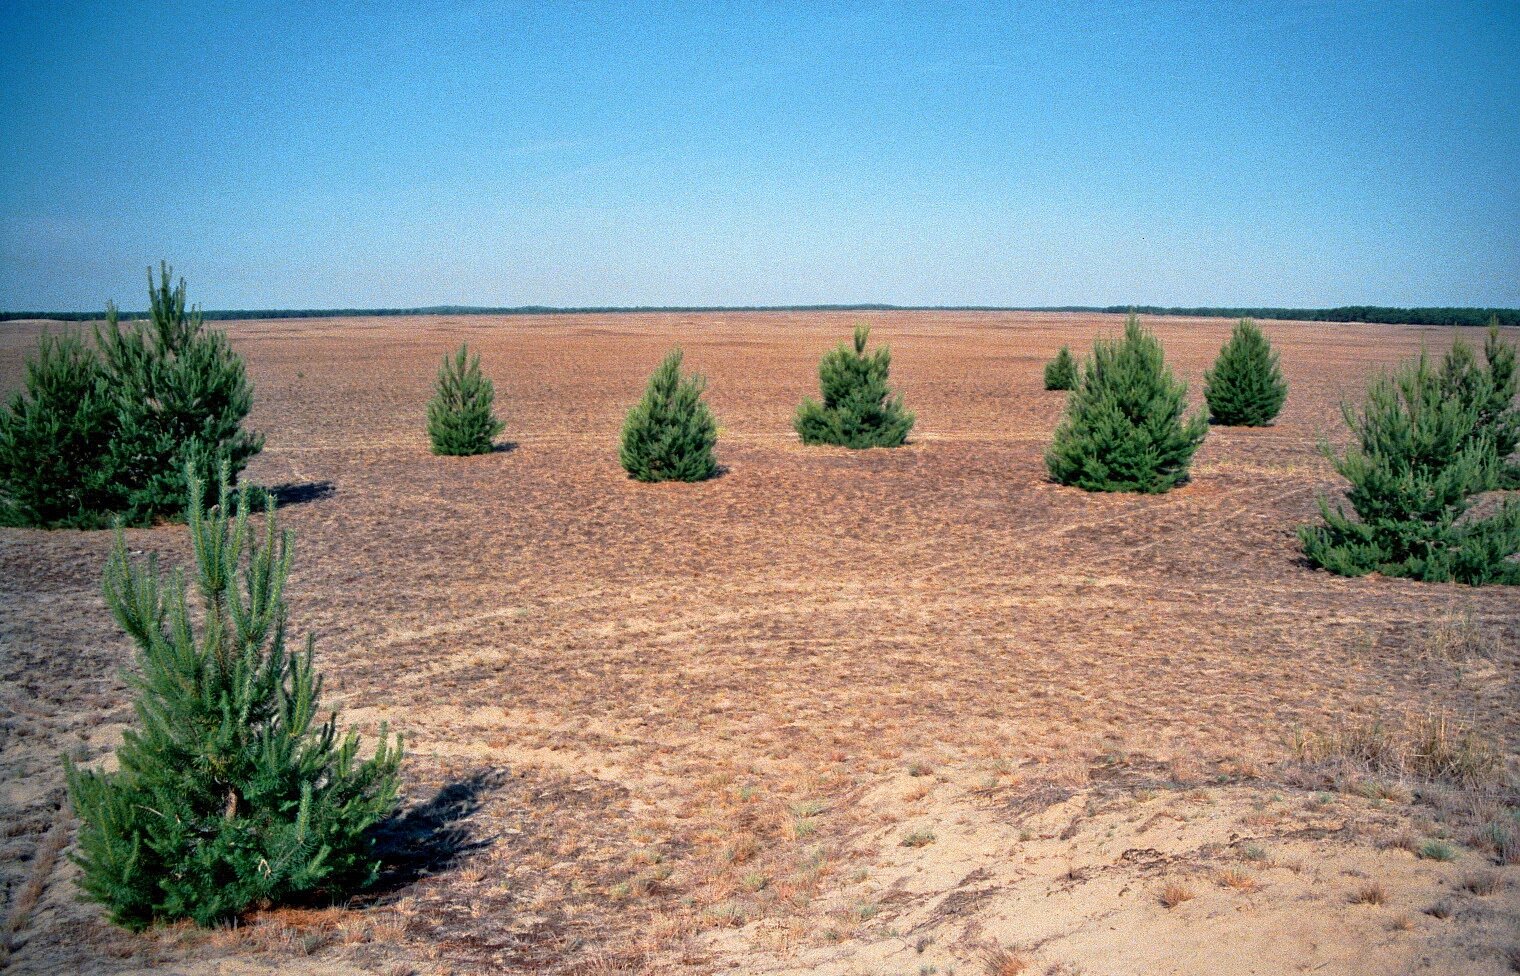 Zdjęcie przedstawia płaski, piaszczysty teren. Na pierwszym planie rosną pojedyncze, niskie drzewa iglaste. 